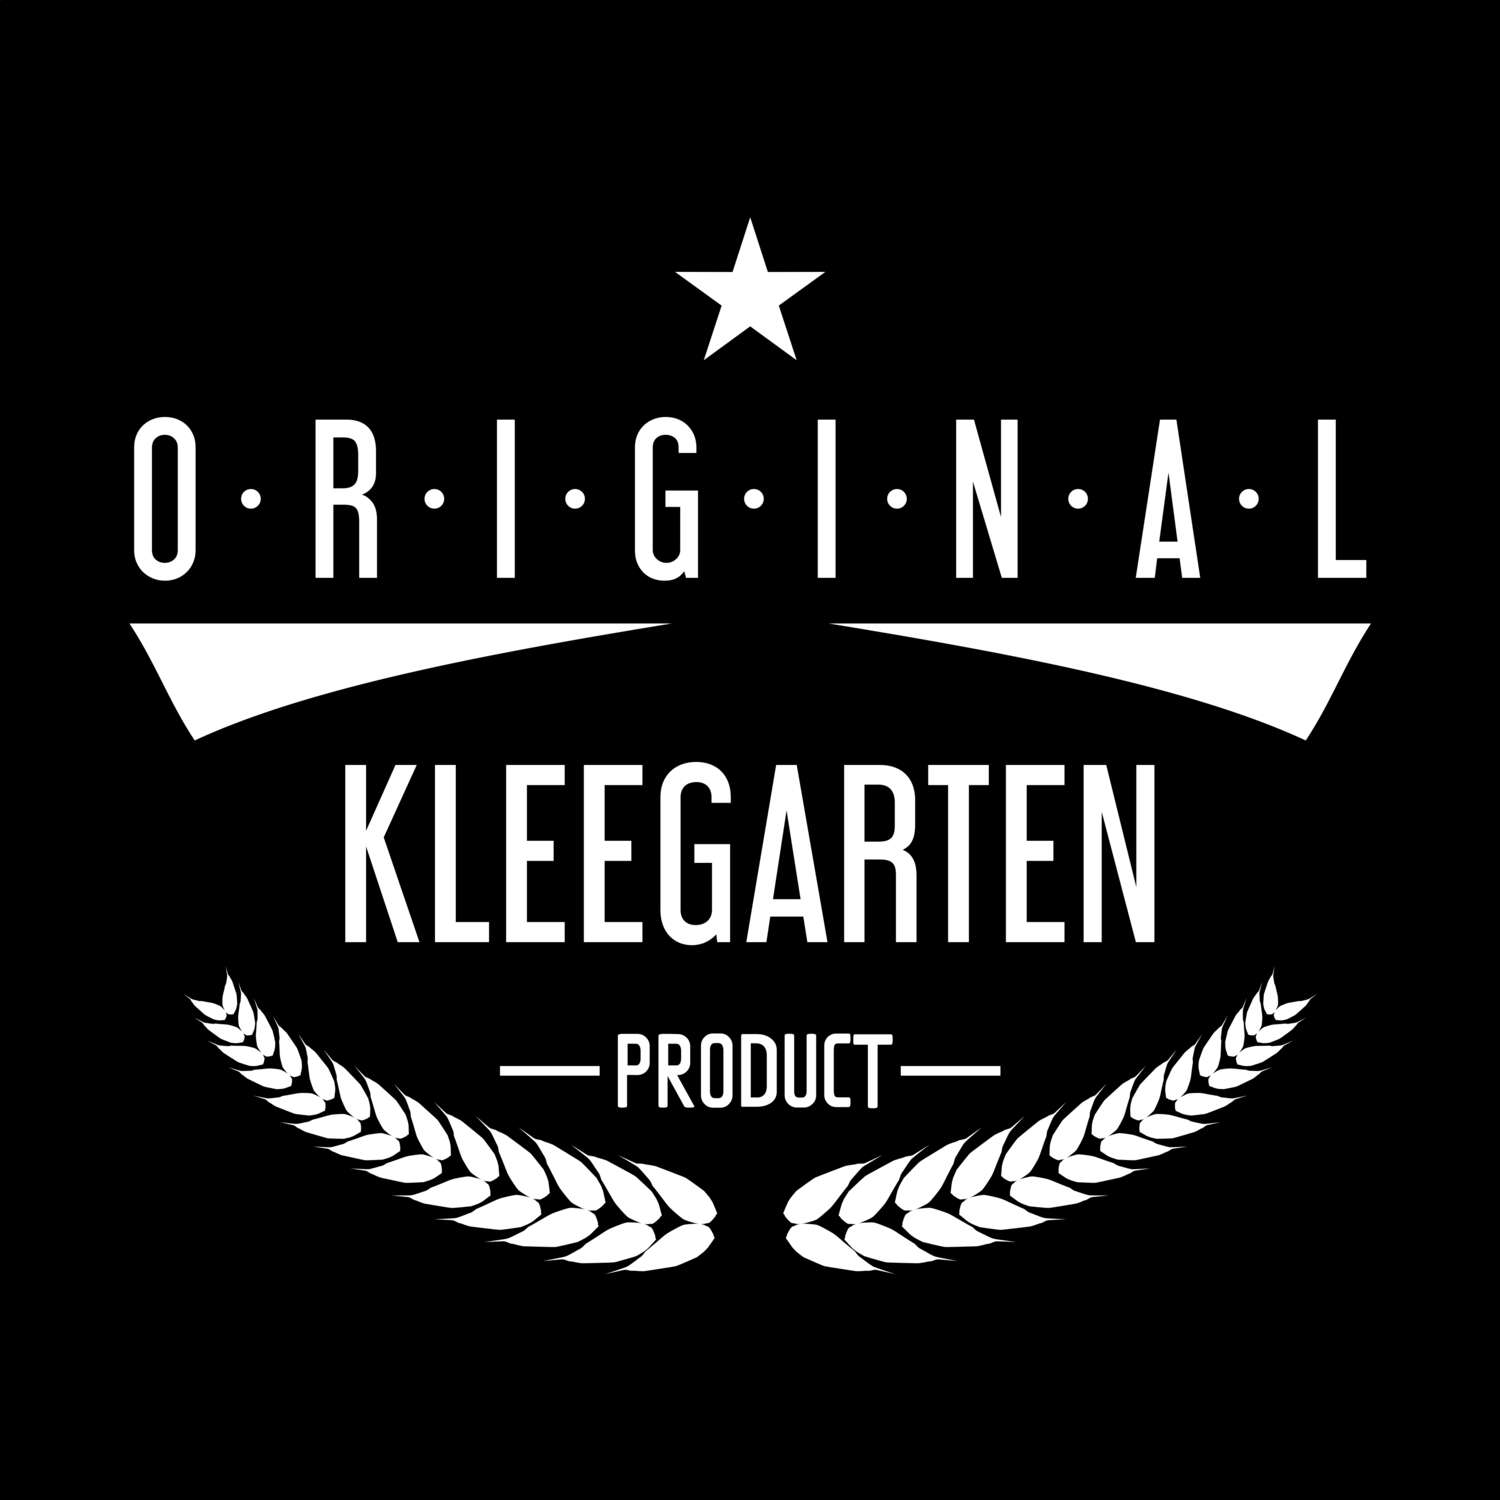 Kleegarten T-Shirt »Original Product«